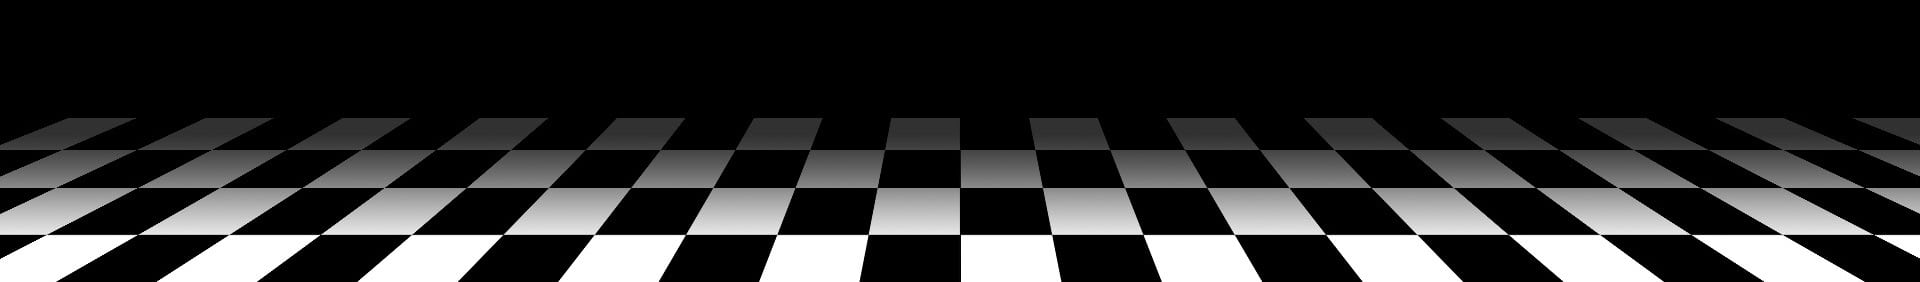 CheckeredFloor